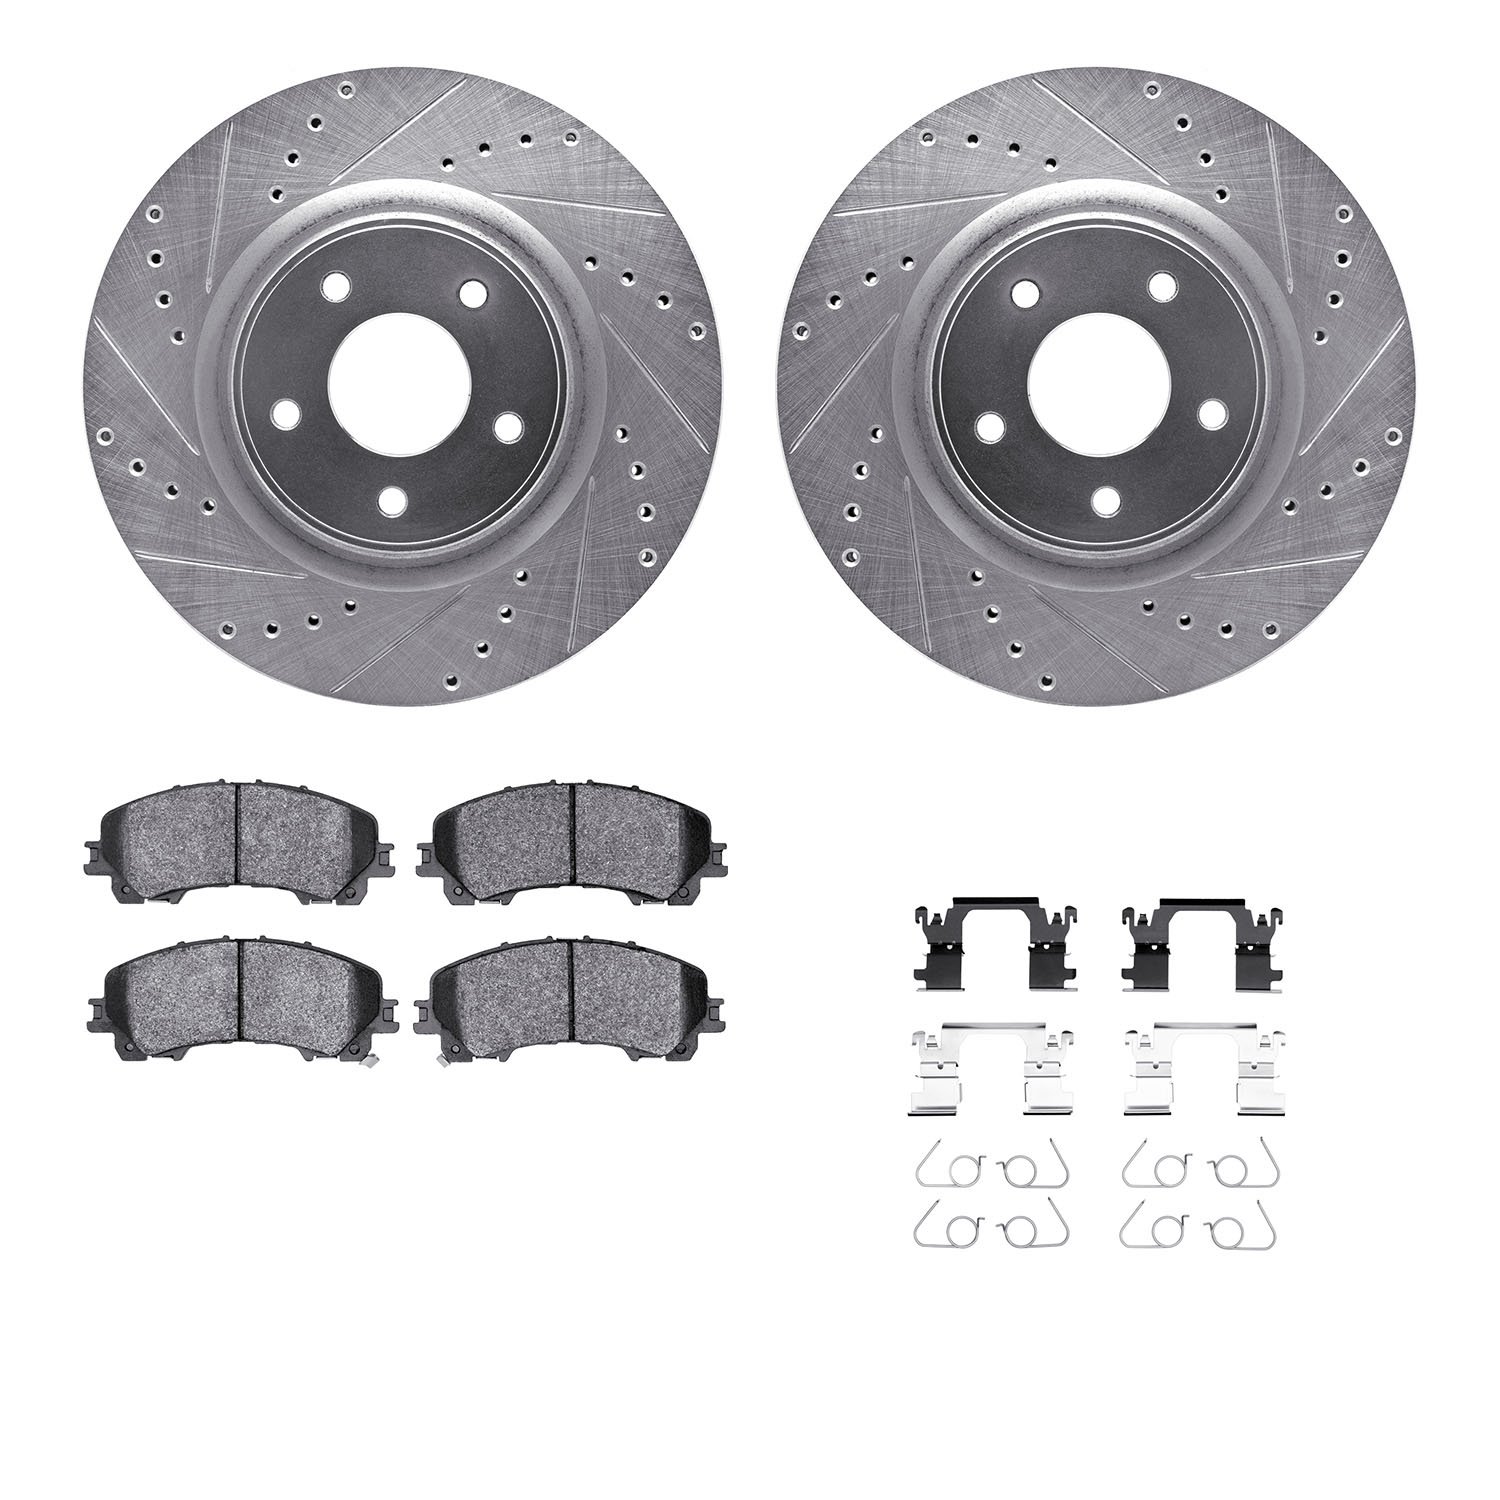 7312-67128 Drilled/Slotted Brake Rotor with 3000-Series Ceramic Brake Pads Kit & Hardware [Silver], 2014-2019 Infiniti/Nissan, P